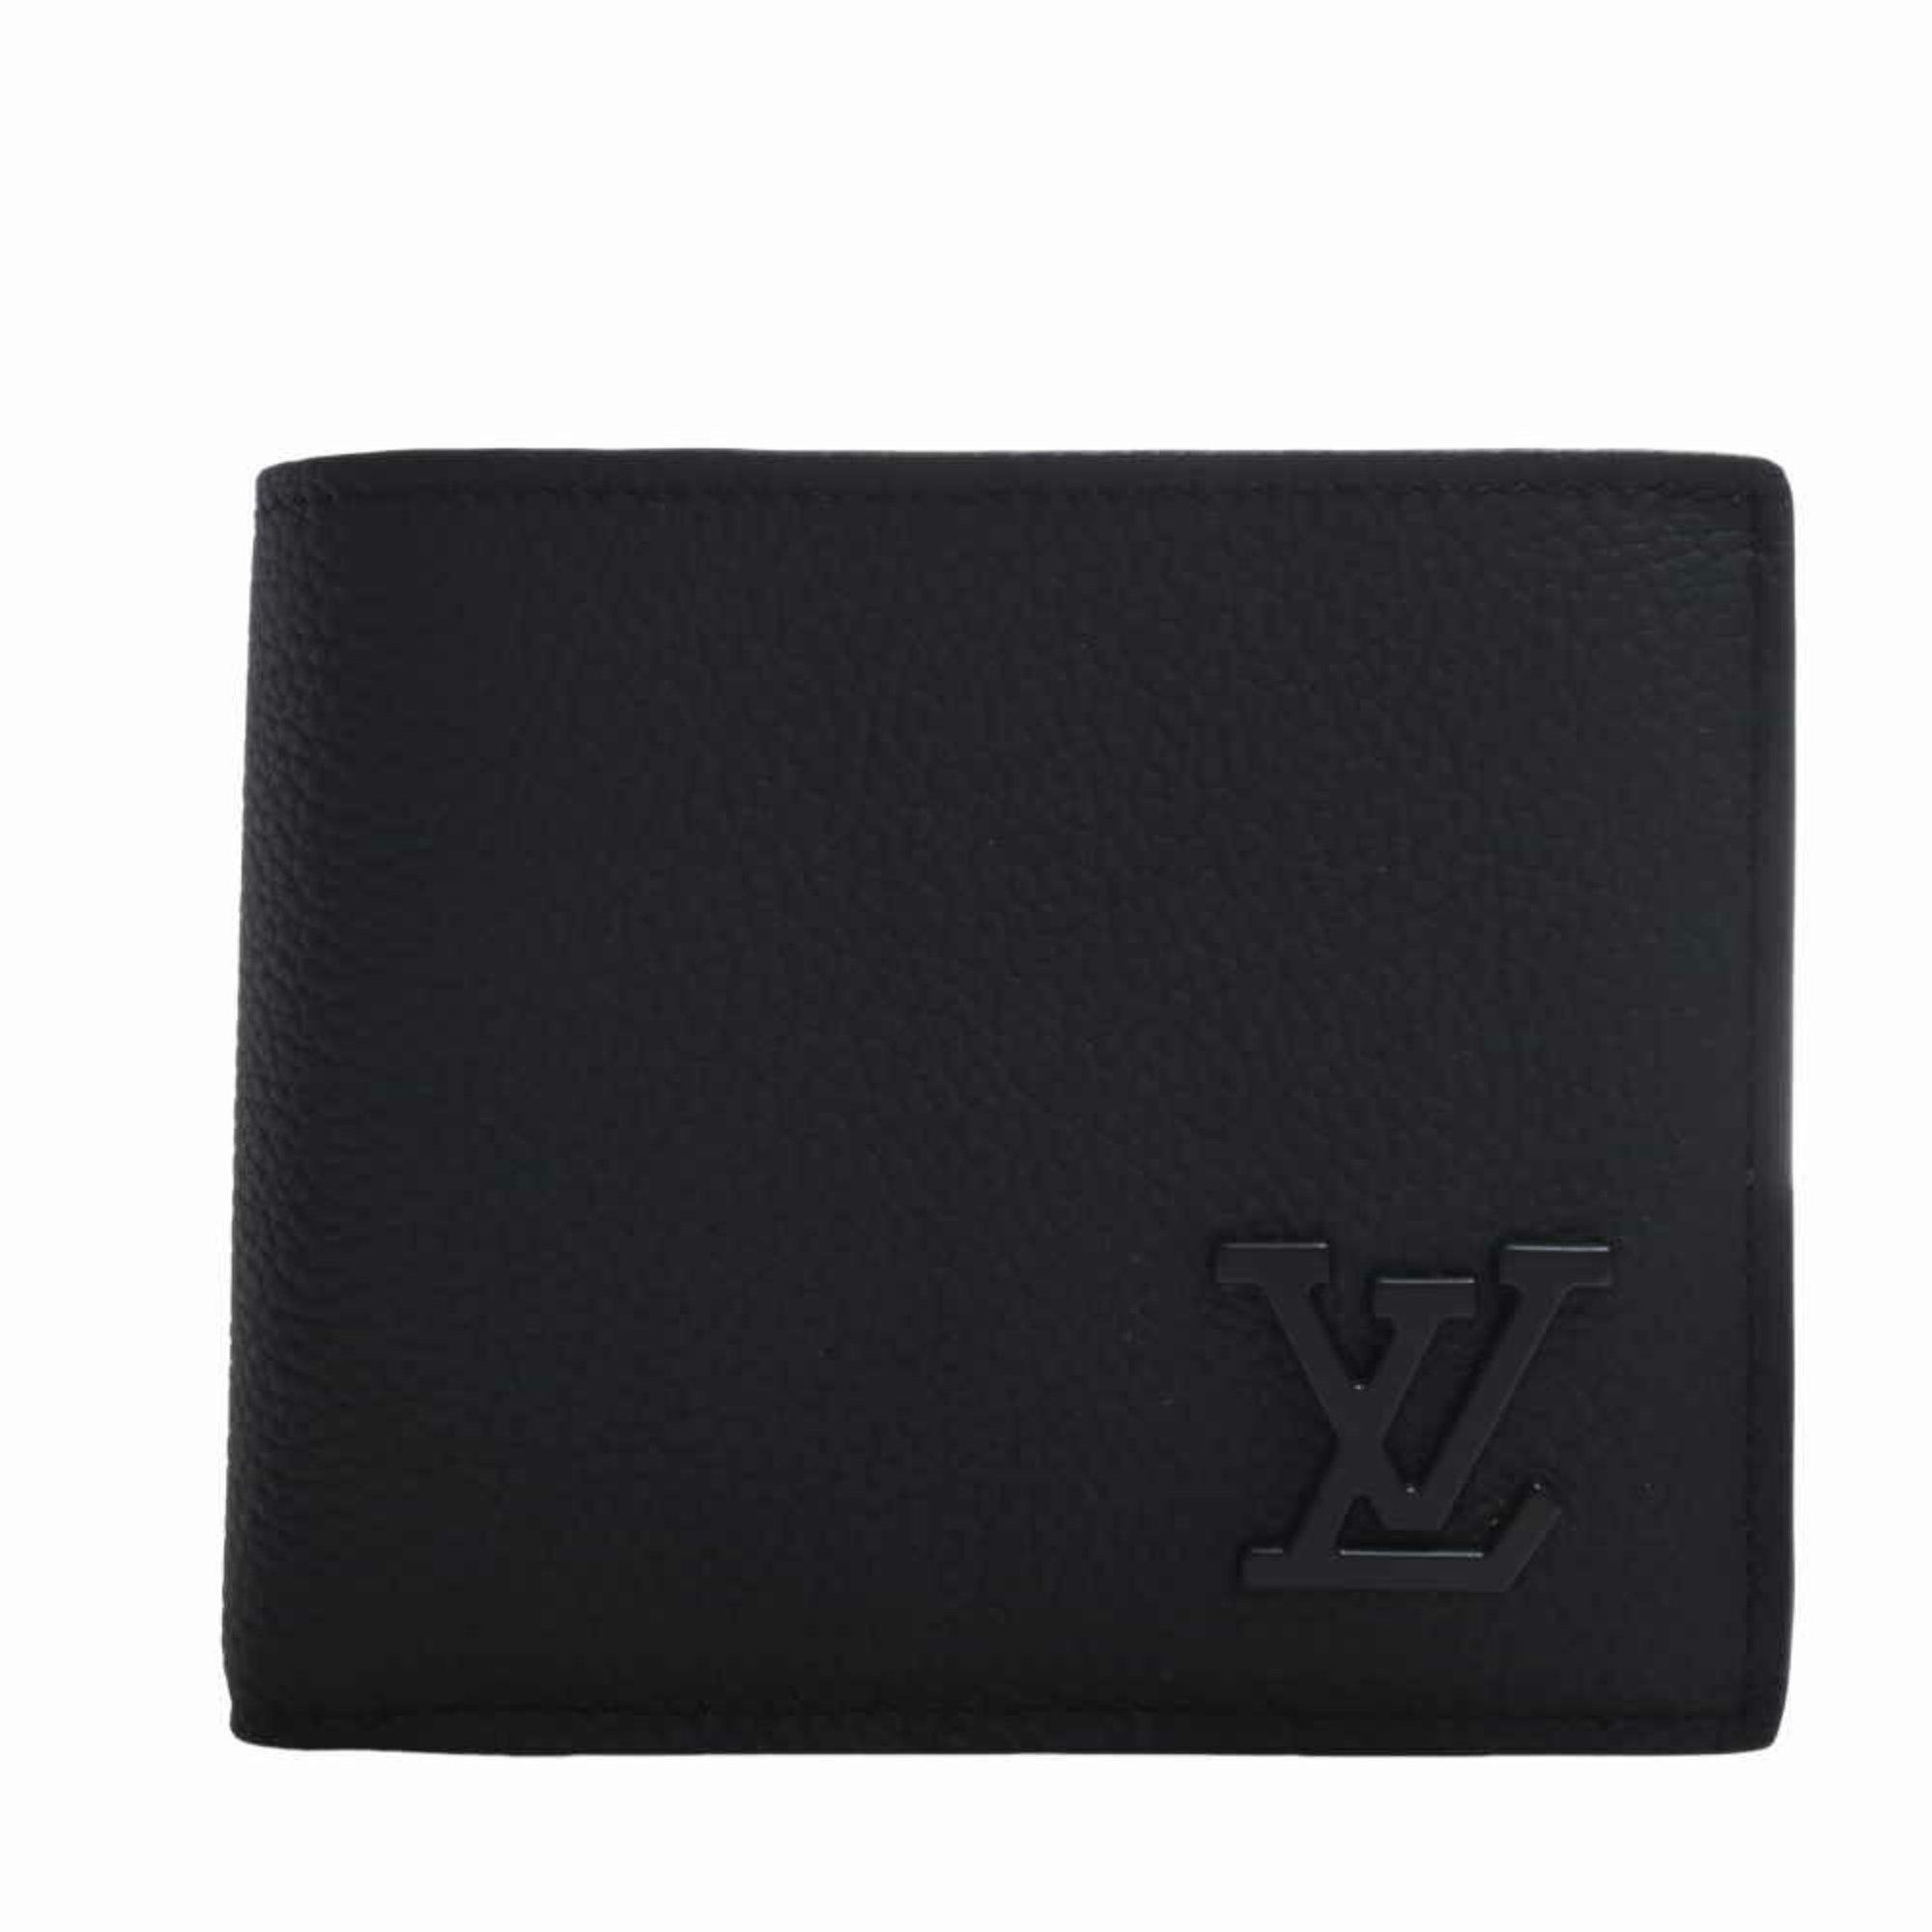 Louis Vuitton M64414 Portefeuille Twist Bifold Wallet Epi Leather